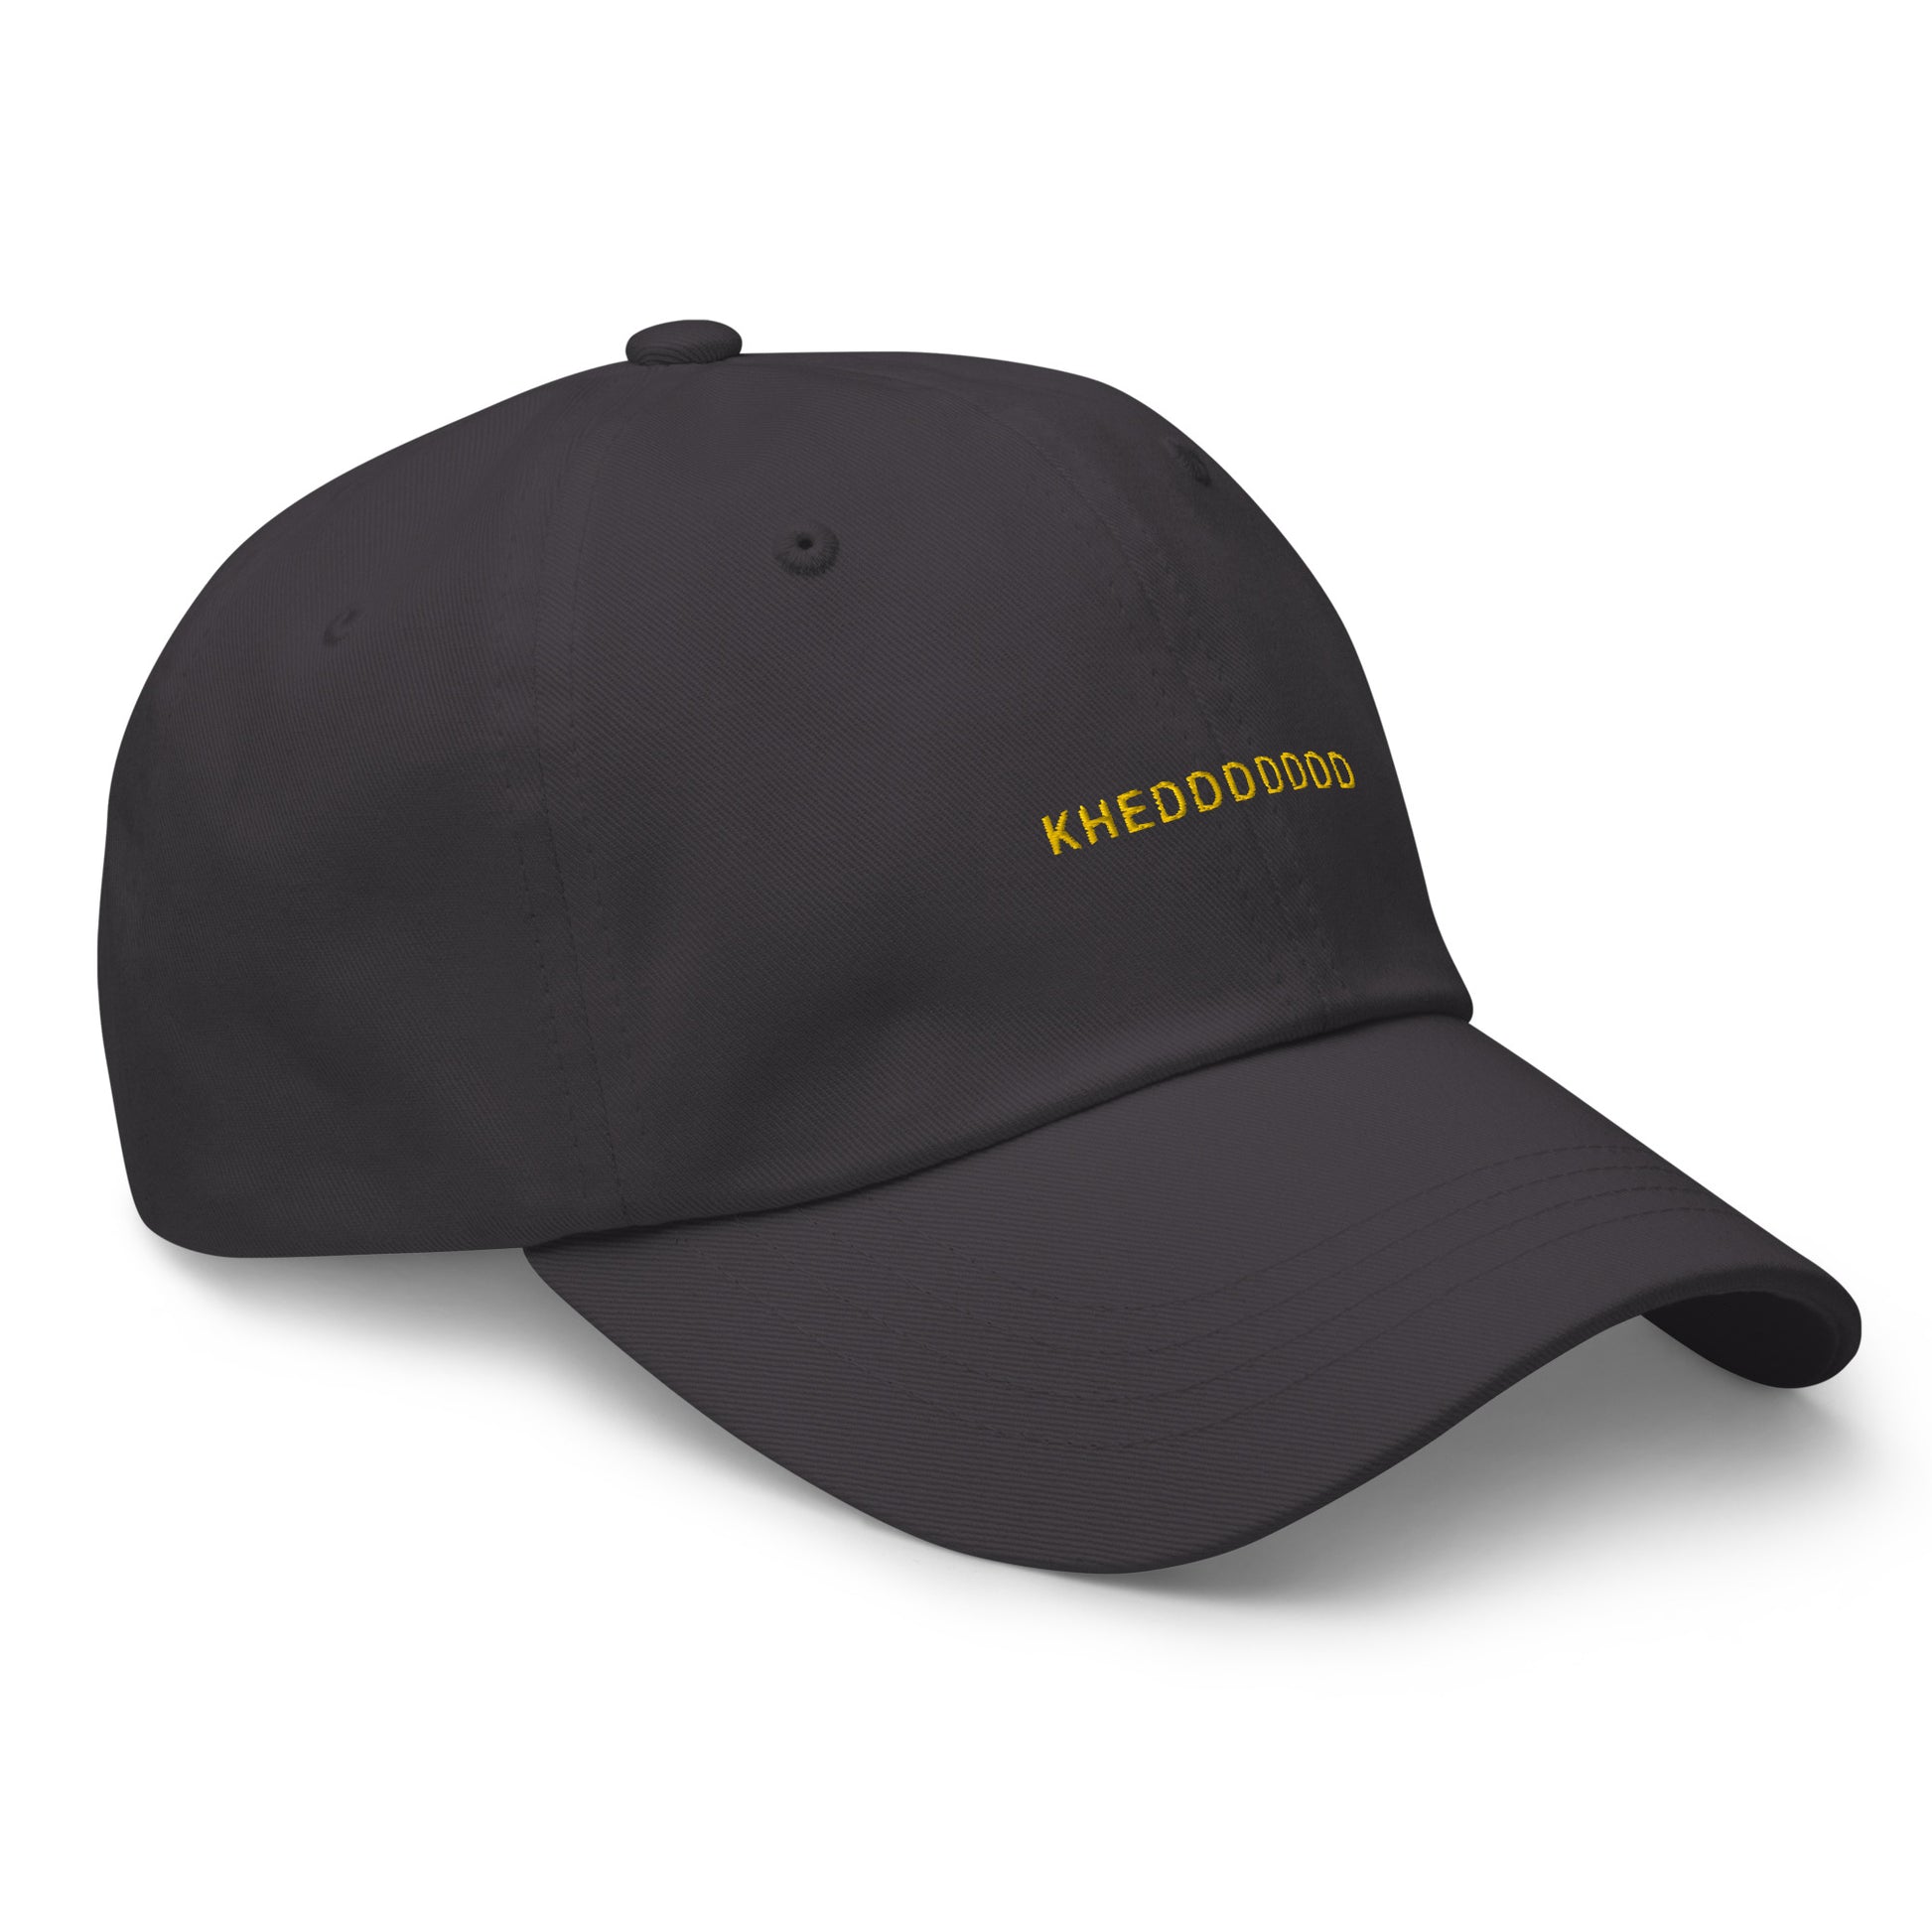 grey hat that says "khedddddd" in gold lettering